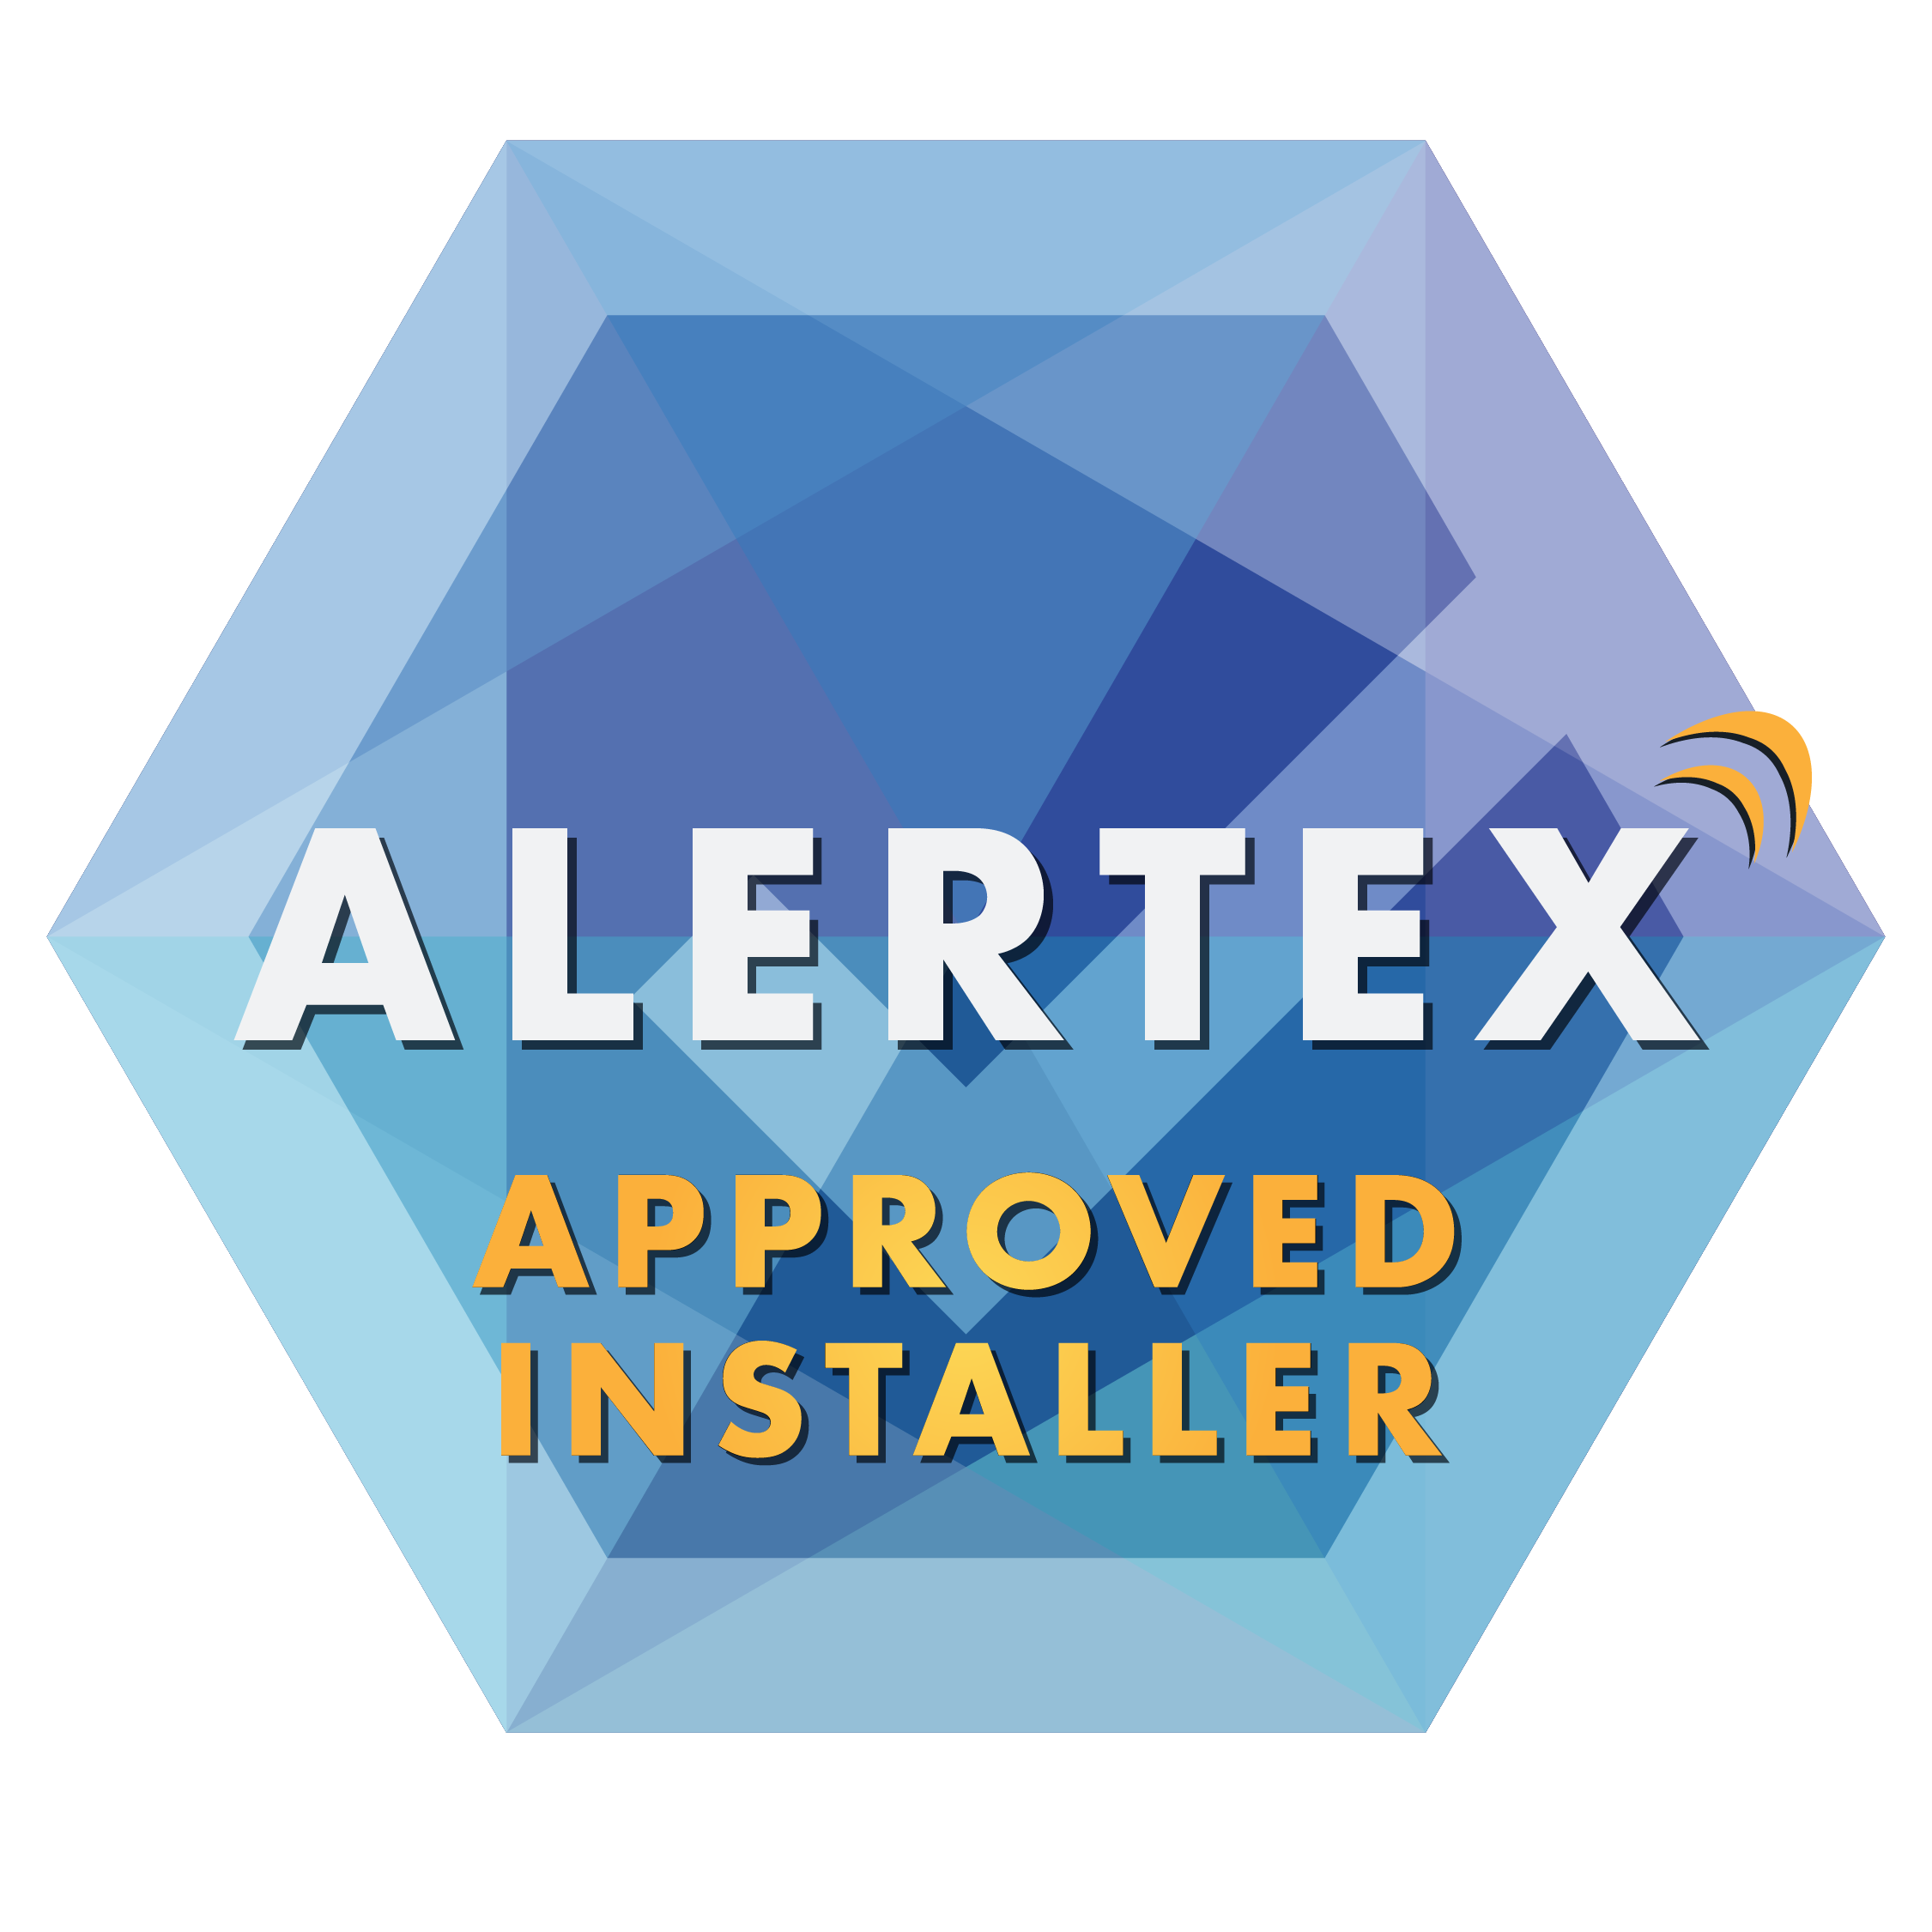 Alertex approved installer scheme logo